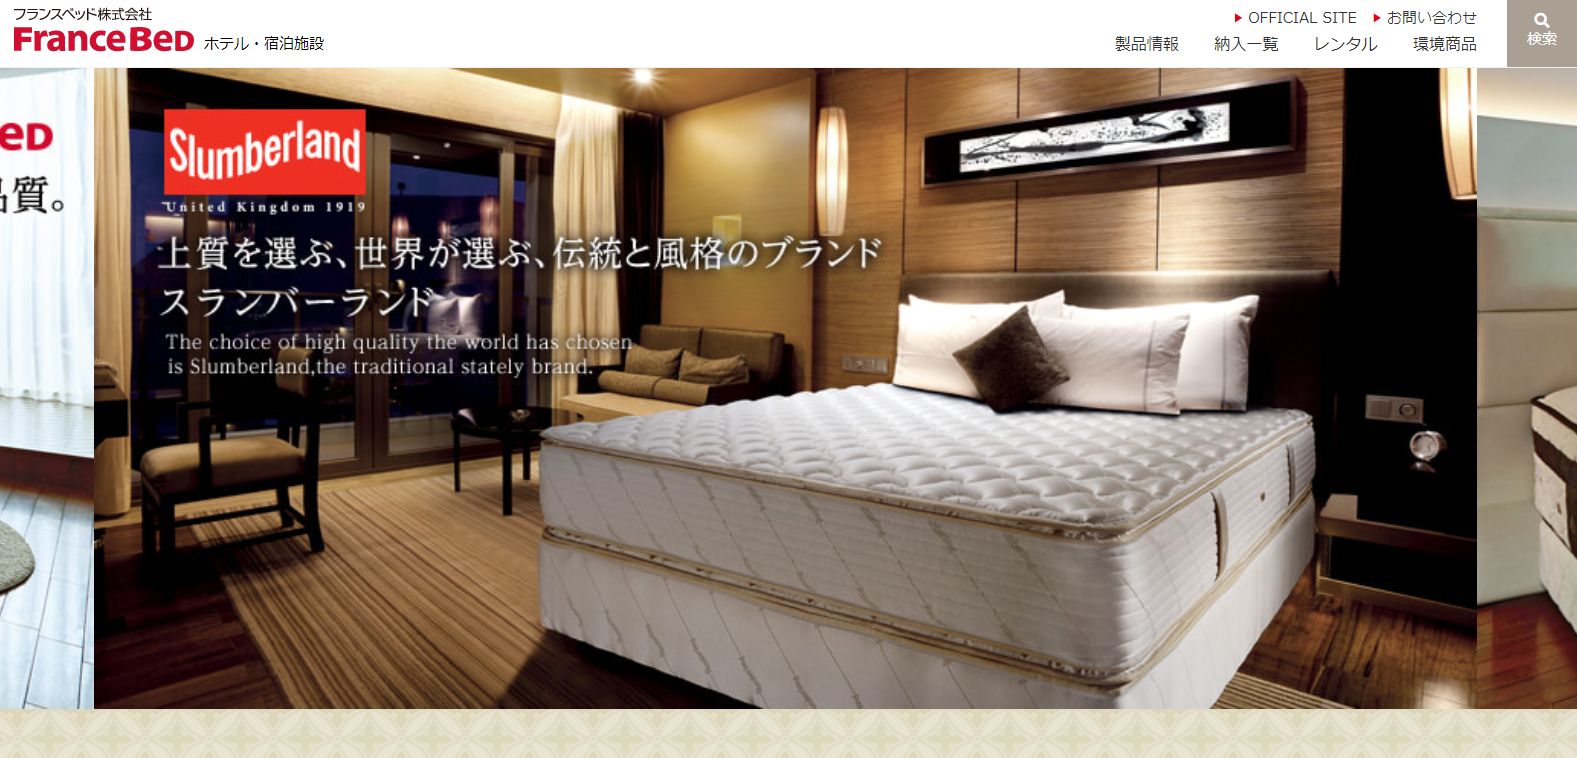 ホテルベッドのまとめ・比較 | 日本最大級のホテル旅館情報サイト